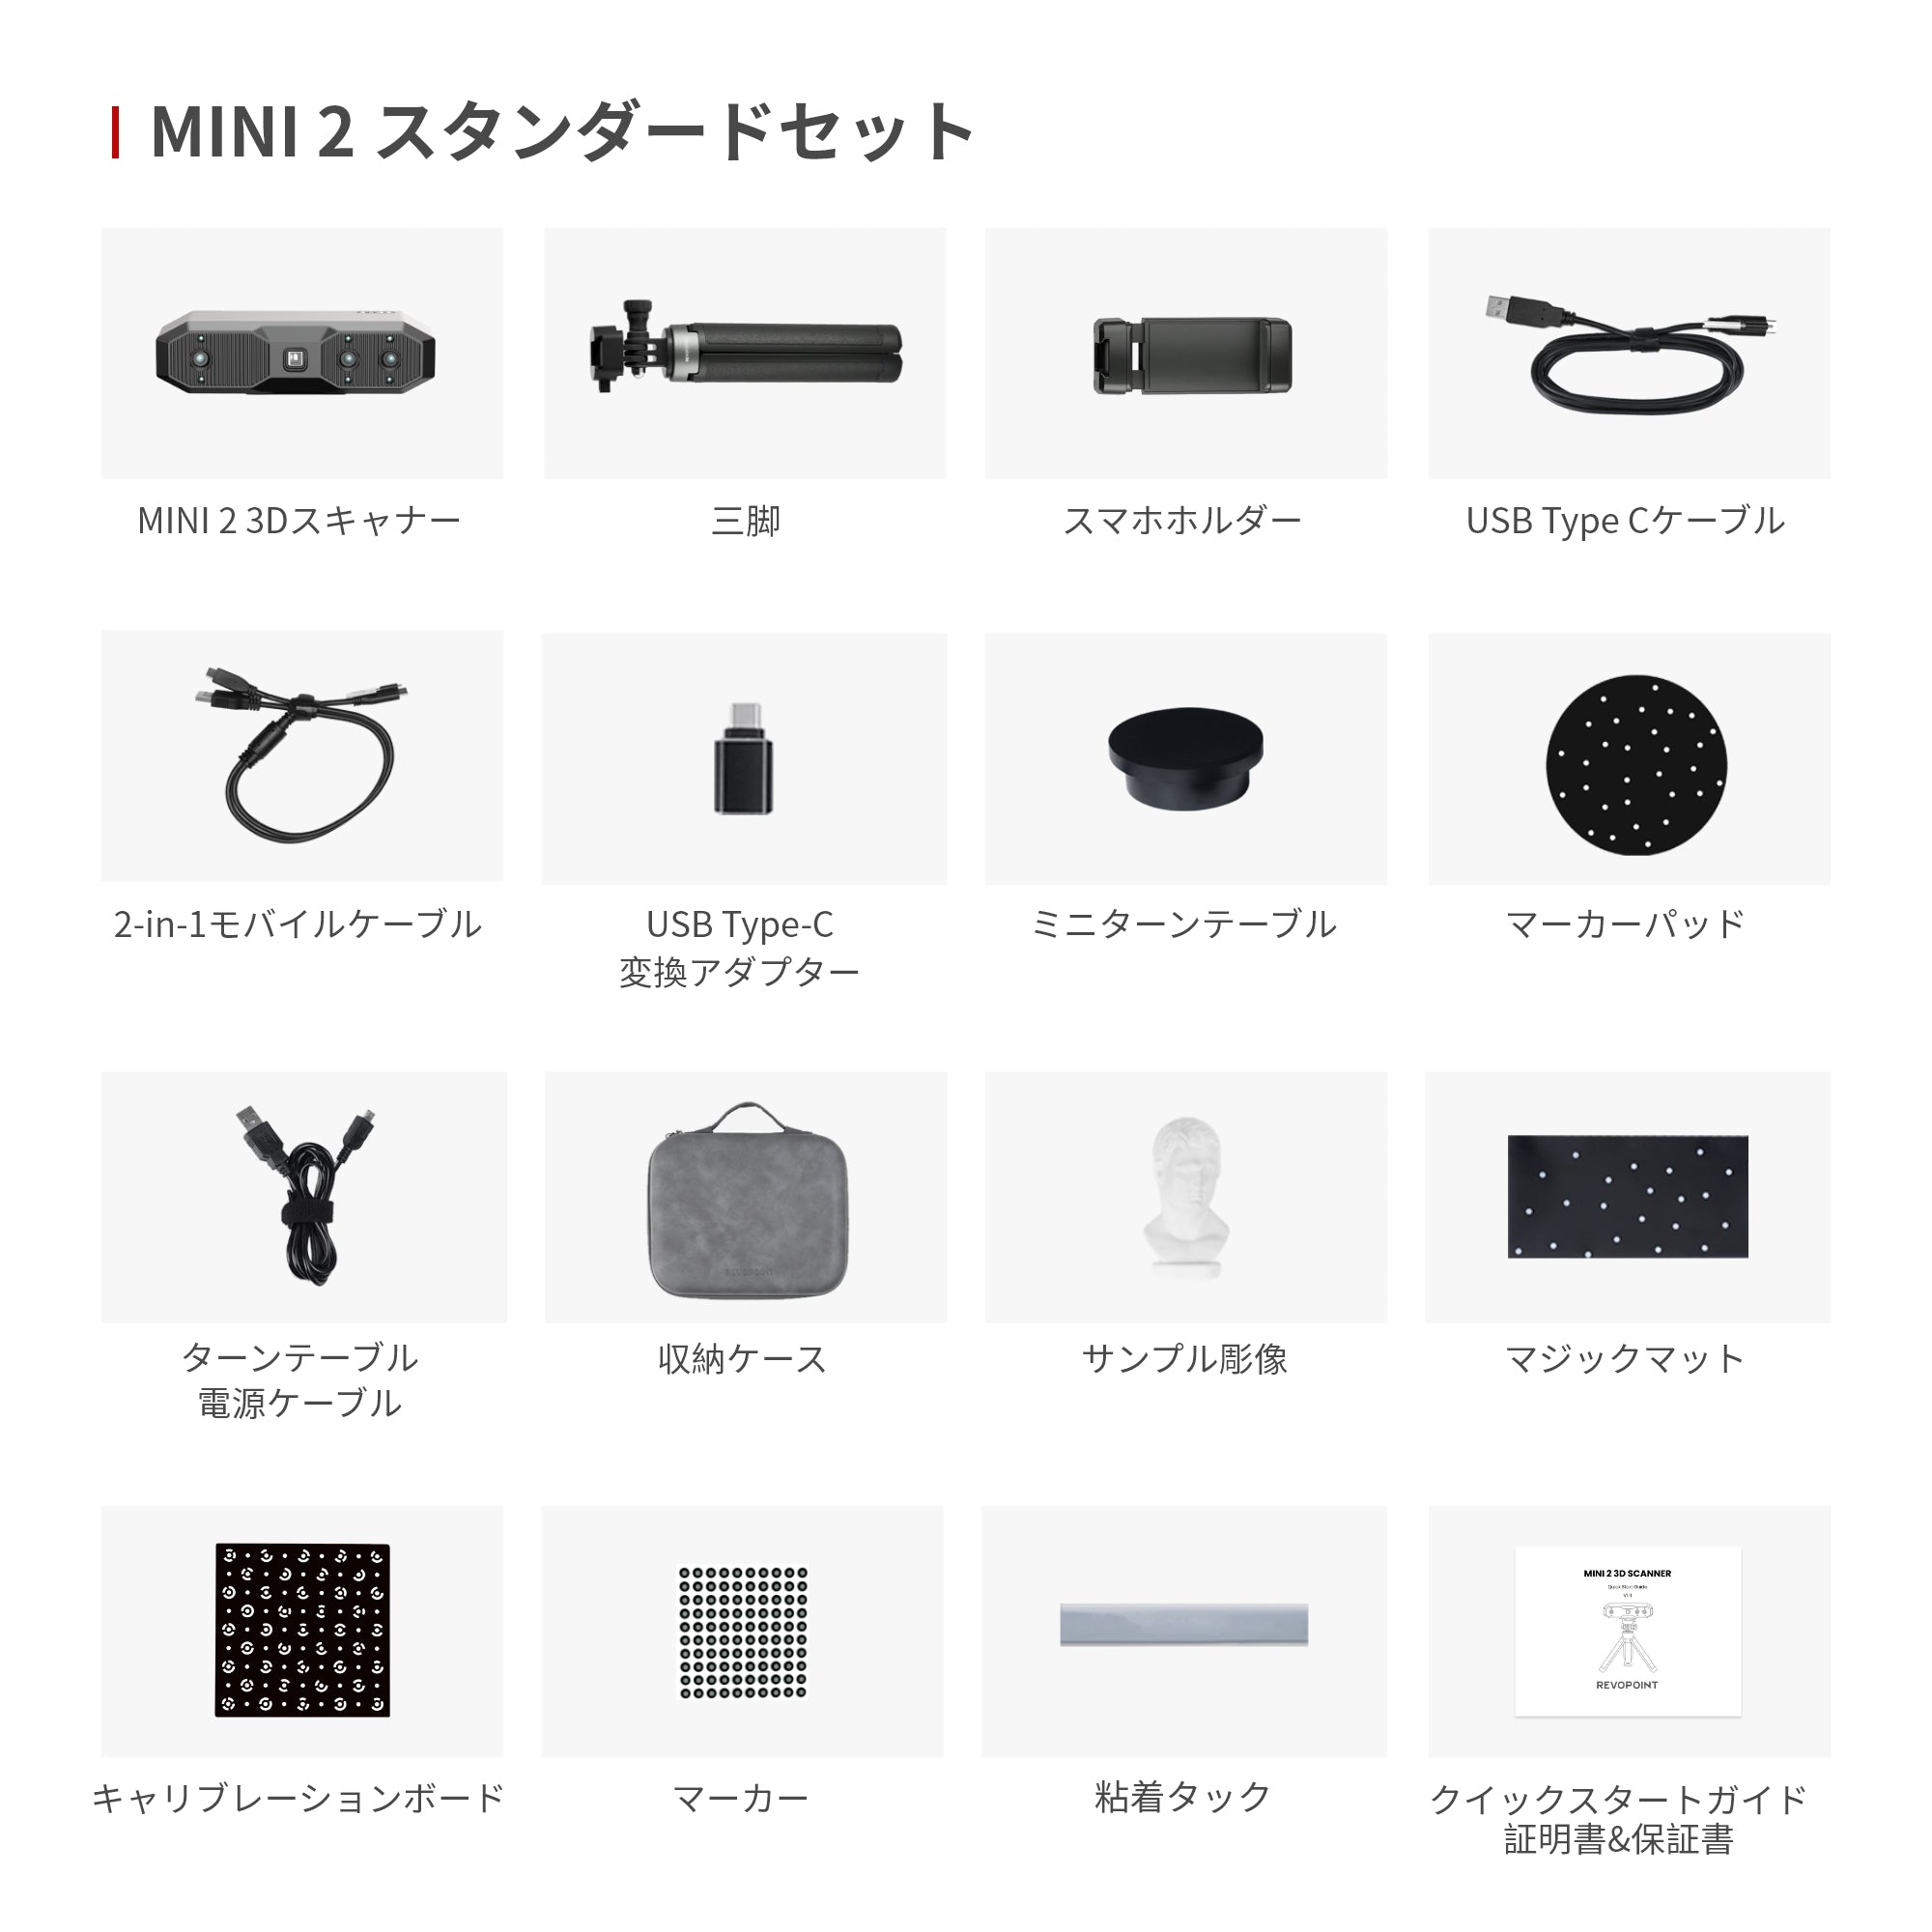 MINI 2 3Dスキャナー:高精度で小物をキャプチャー